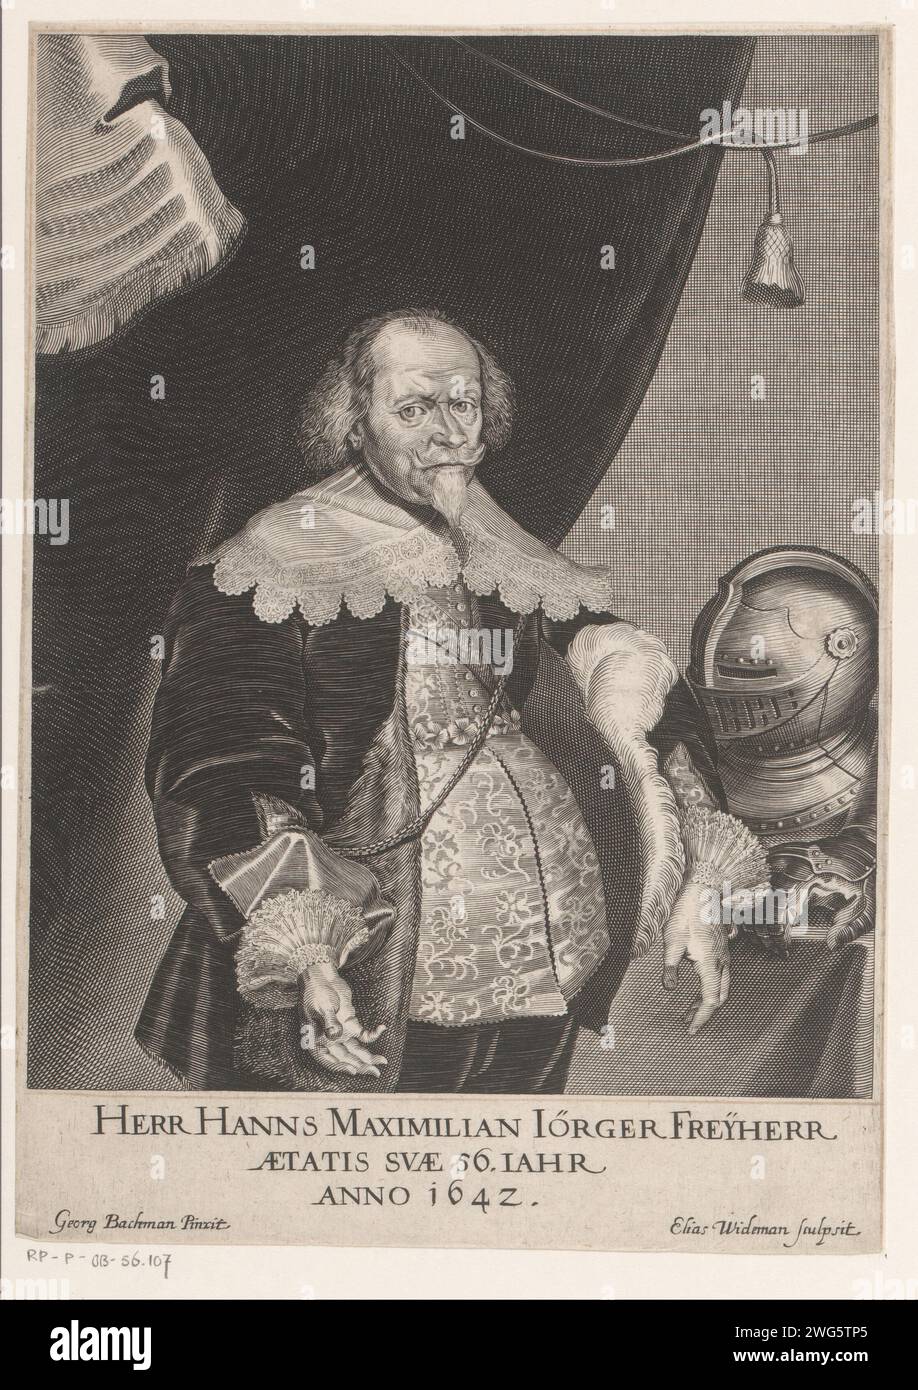 Porter Van Hans Maximilian Jörger von Tollet, Elias Widemann, d'après Georg Bachmann, 1642 estampe Autriche (peut-être) gravure sur papier de personnages historiques. casque Banque D'Images